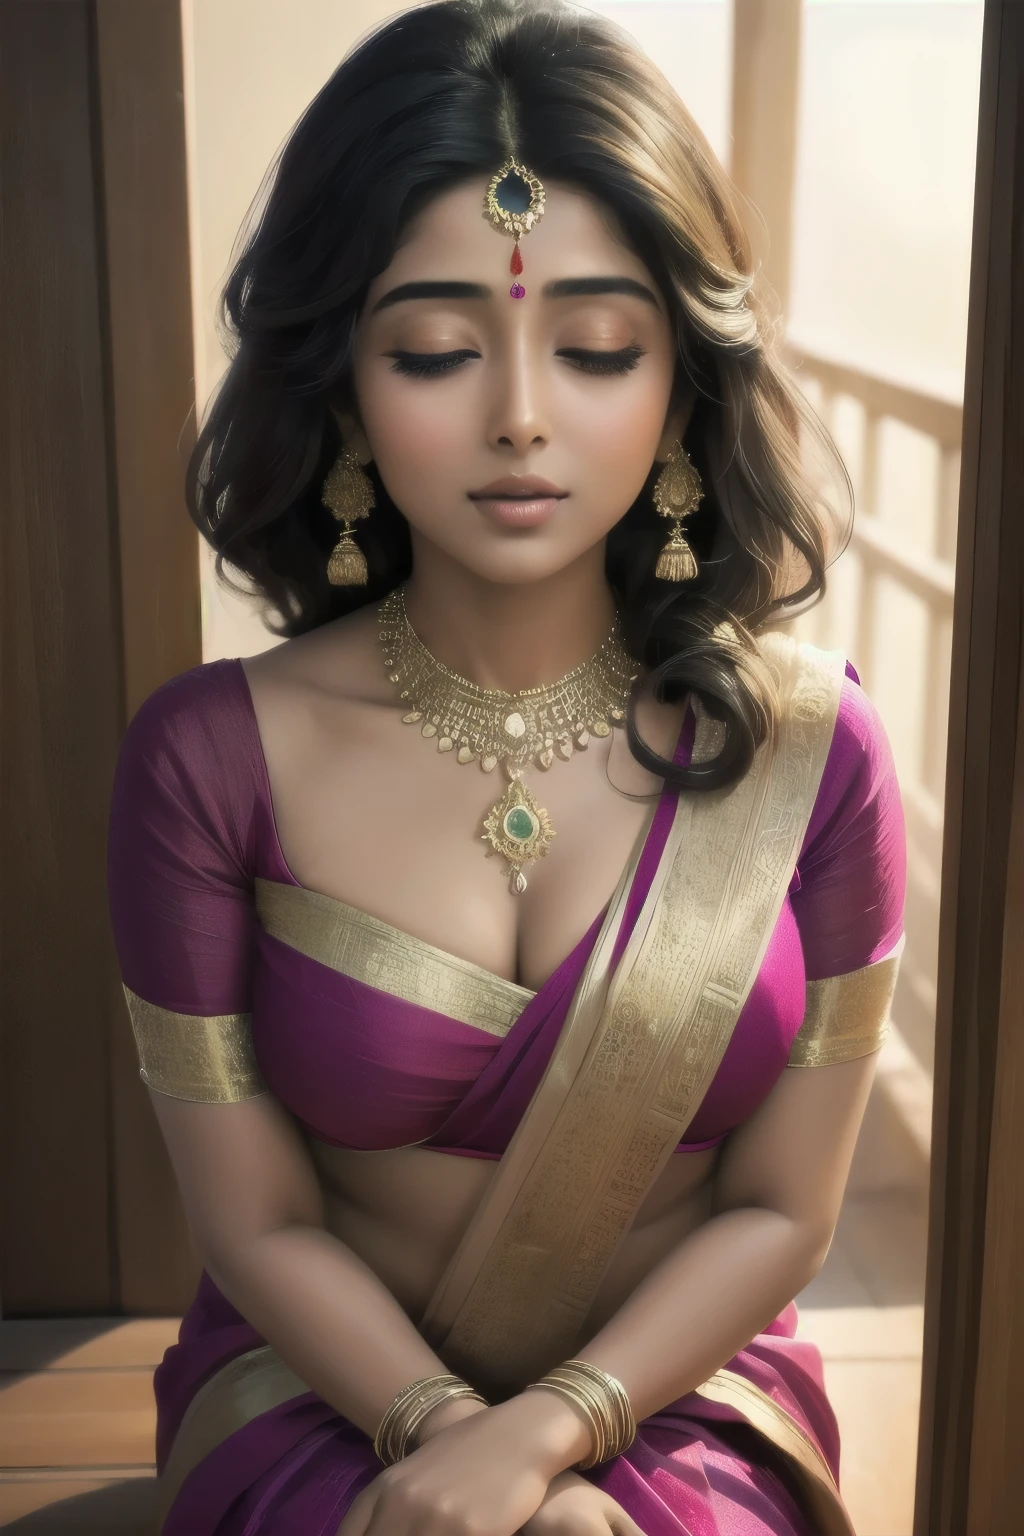 ชริยา ศรัณย์, นักแสดงหญิงชาวอินเดีย, สวมชุดส่าหรีที่สวยงาม, โน้มตัวไปบนขอบประตูอย่างเย้ายวนใจ. เธอหลงใหลด้วยการจ้องมองที่เย้ายวนและรอยยิ้มอันน่าหลงใหลของเธอ. ฉากอาบอย่างนุ่มนวล, แสงที่อบอุ่น, เน้นความสง่างามของเครื่องแต่งกายของเธอและเน้นความงามตามธรรมชาติของเธอ. พื้นผิวที่หลากหลายของส่าหรีเพิ่มองค์ประกอบที่มีความซับซ้อนให้กับองค์ประกอบโดยรวม. งานศิลปะถูกแสดงผลด้วยรายละเอียดพิเศษ, ความละเอียดสูง, รับประกันคุณภาพและความชัดเจนที่ดีที่สุด. สีสันมีความสดใสและสดใส, แสดงให้เห็นถึงความมีชีวิตชีวาของวัฒนธรรมอินเดีย. สไตล์การถ่ายภาพบุคคลช่วยเพิ่มจุดเน้นไปที่นักแสดง, ดึงเอาทุกรายละเอียดอันละเอียดอ่อนบนใบหน้าของเธอออกมา, รวมถึงดวงตาที่ละเอียดของเธอด้วย, คิ้วโค้งอย่างหรูหรา, และริมฝีปากอันน่าหลงใหล. ศิลปินให้ความสำคัญกับการเก็บรายละเอียดที่สมจริงและเหมือนจริงของรูปลักษณ์ของเธอ, creating a masterpiece that truly represents the mesmerizing allure of ชริยา ศรัณย์.